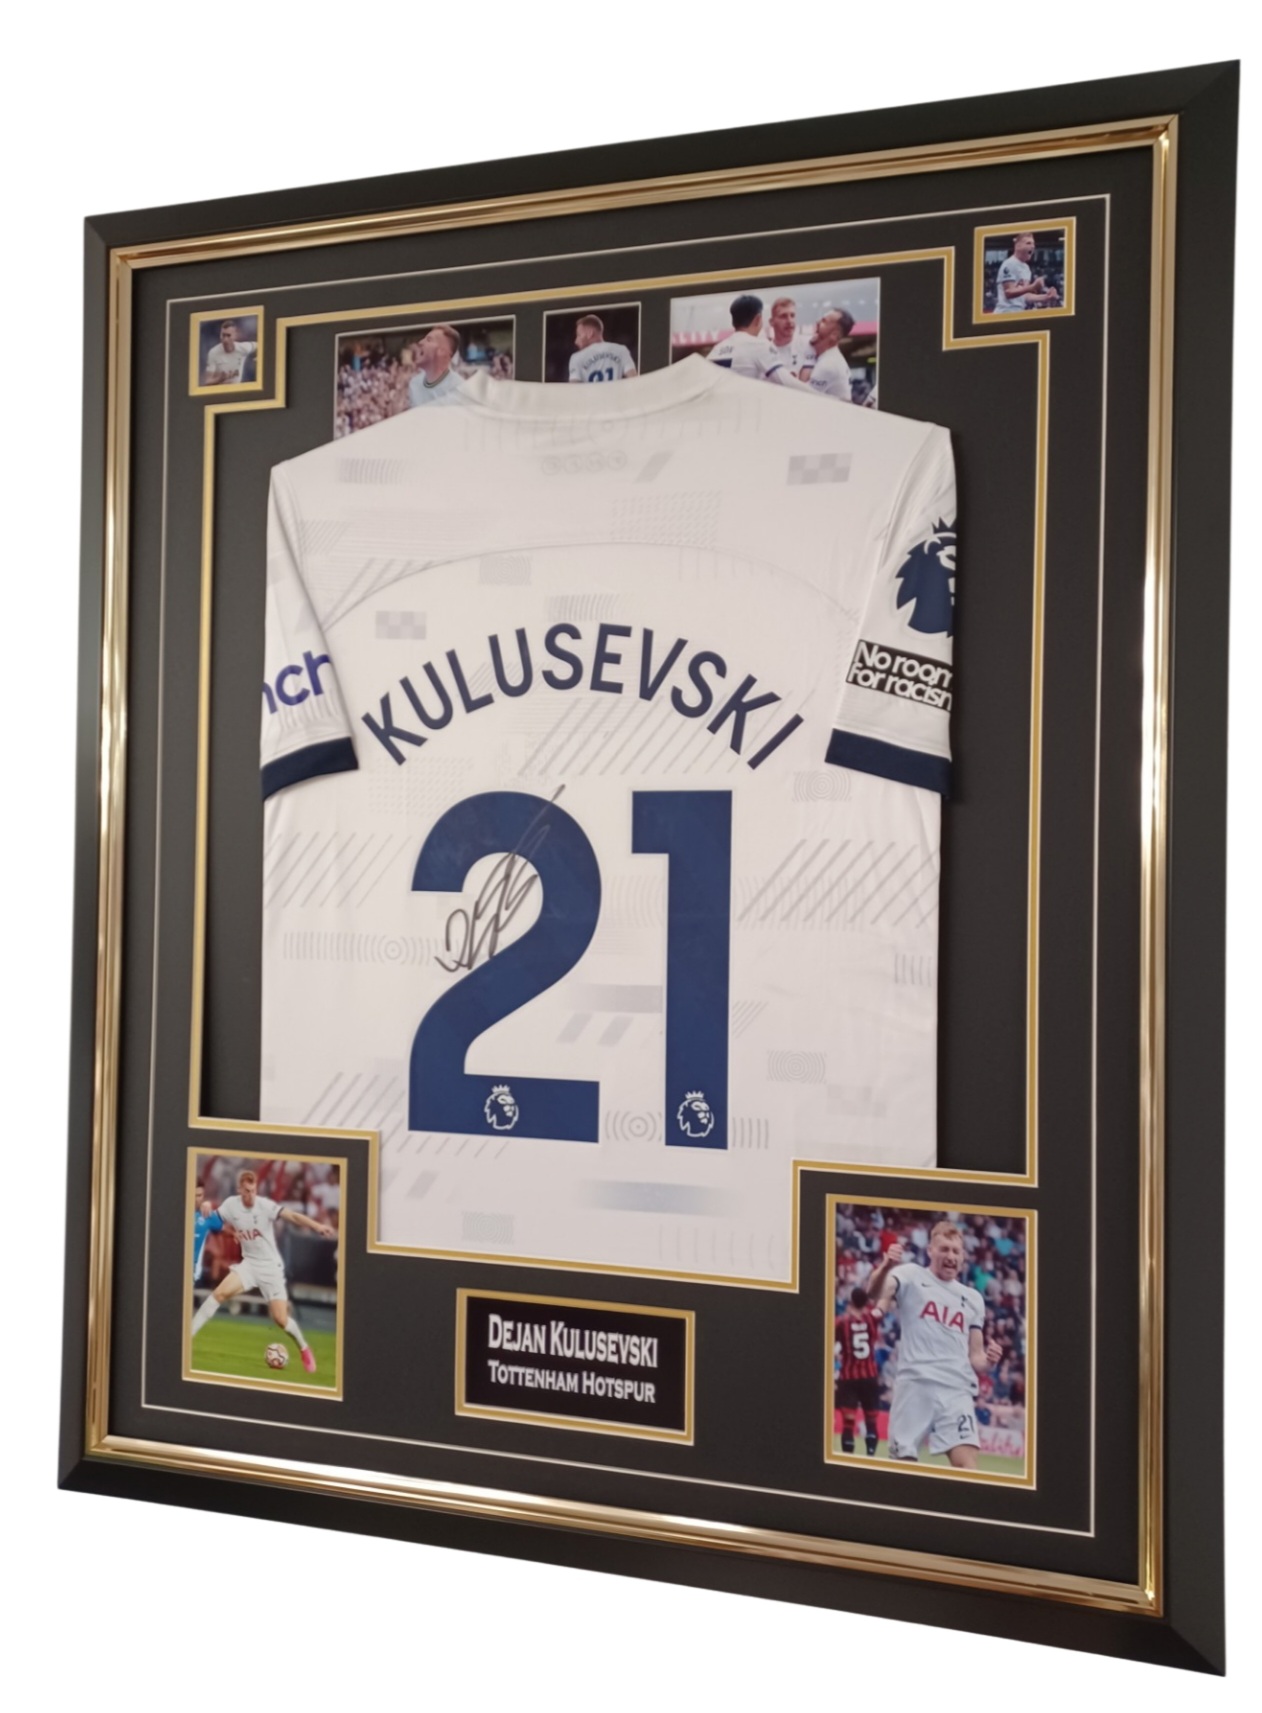 kulusevski signed jersey